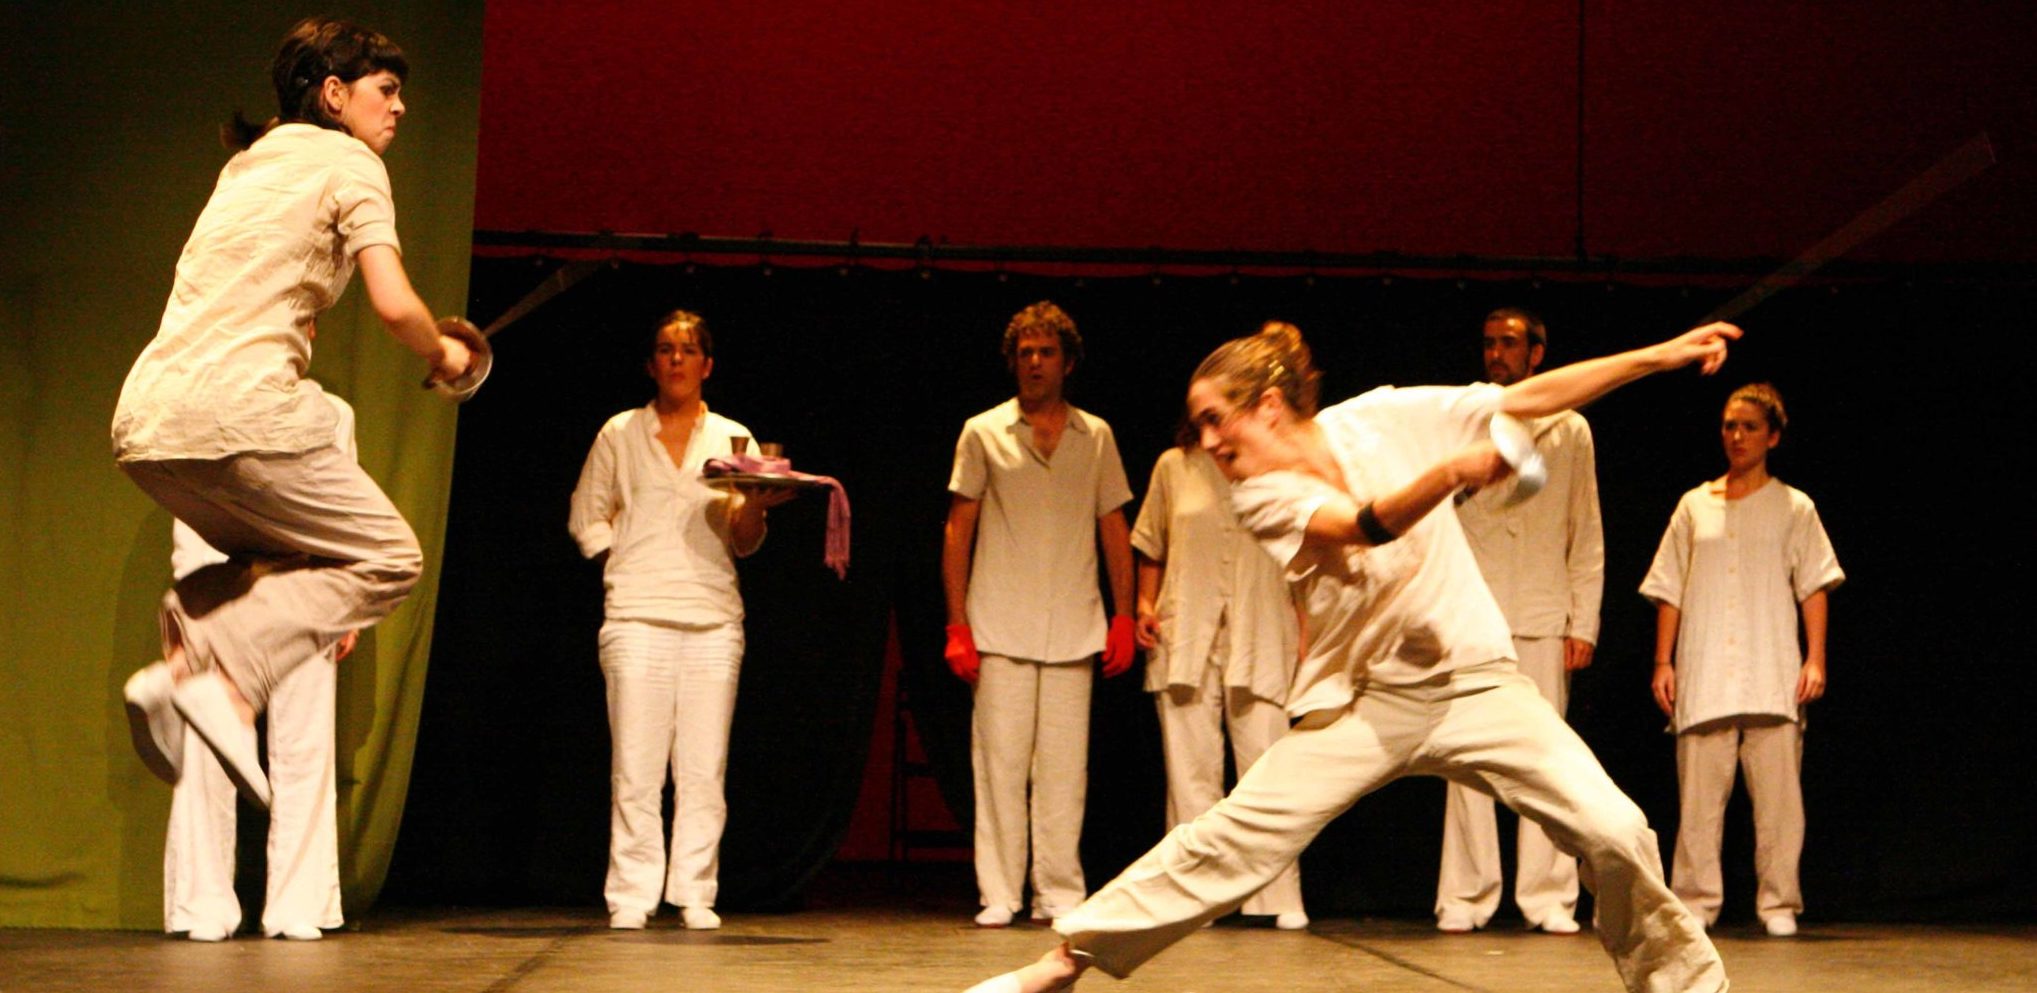 Esgrima combate escénico escuela teatro interpretación barcelona el timbal